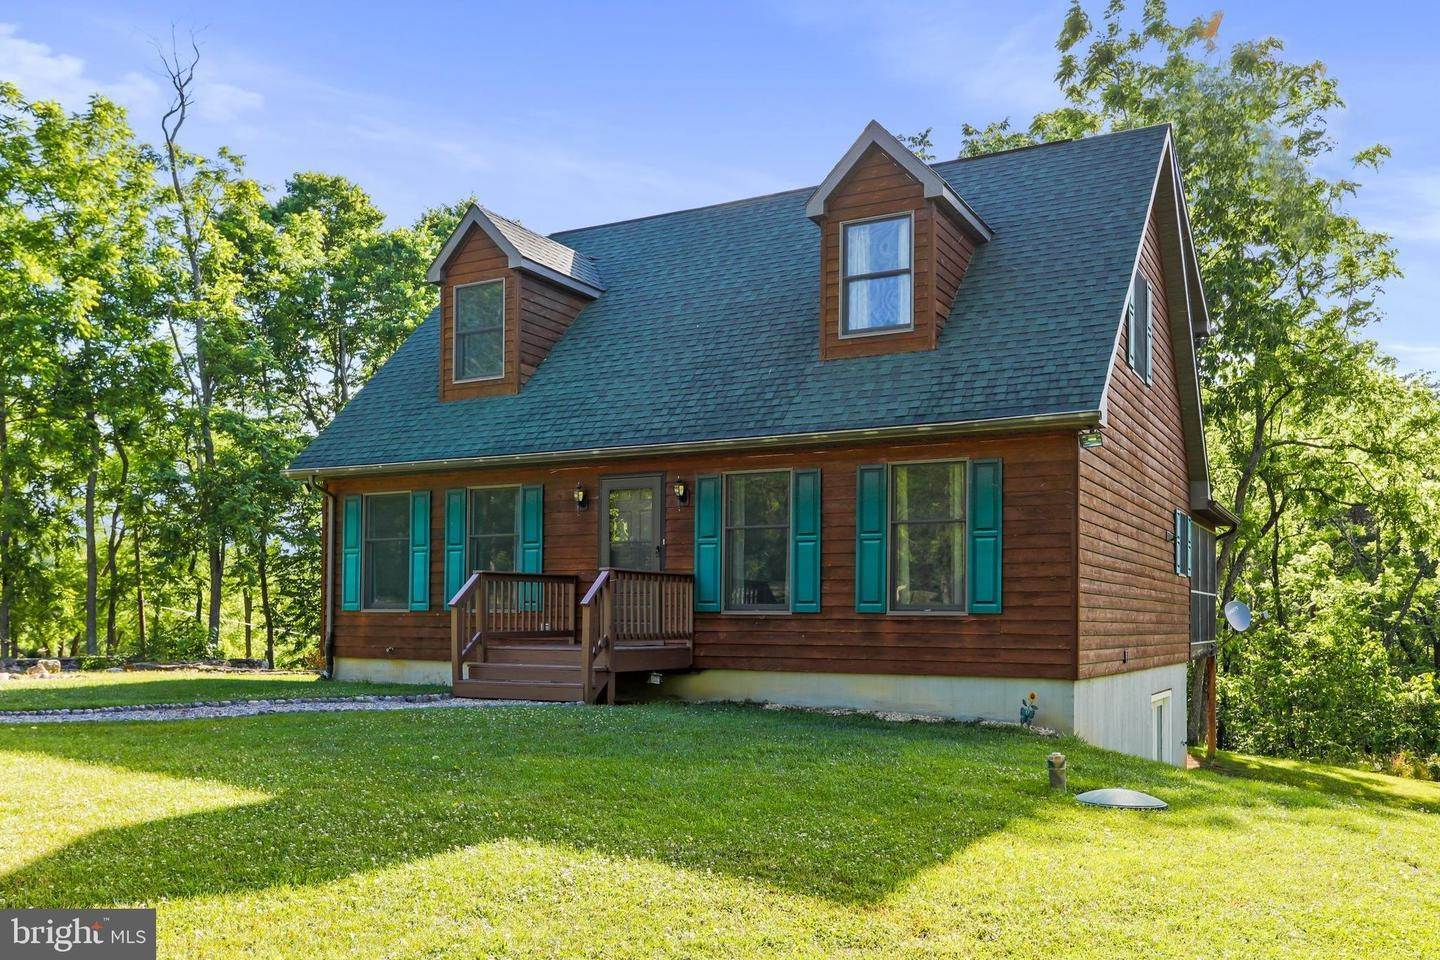 Single Family Homes för Försäljning vid Great Cacapon, West Virginia 25422 Förenta staterna